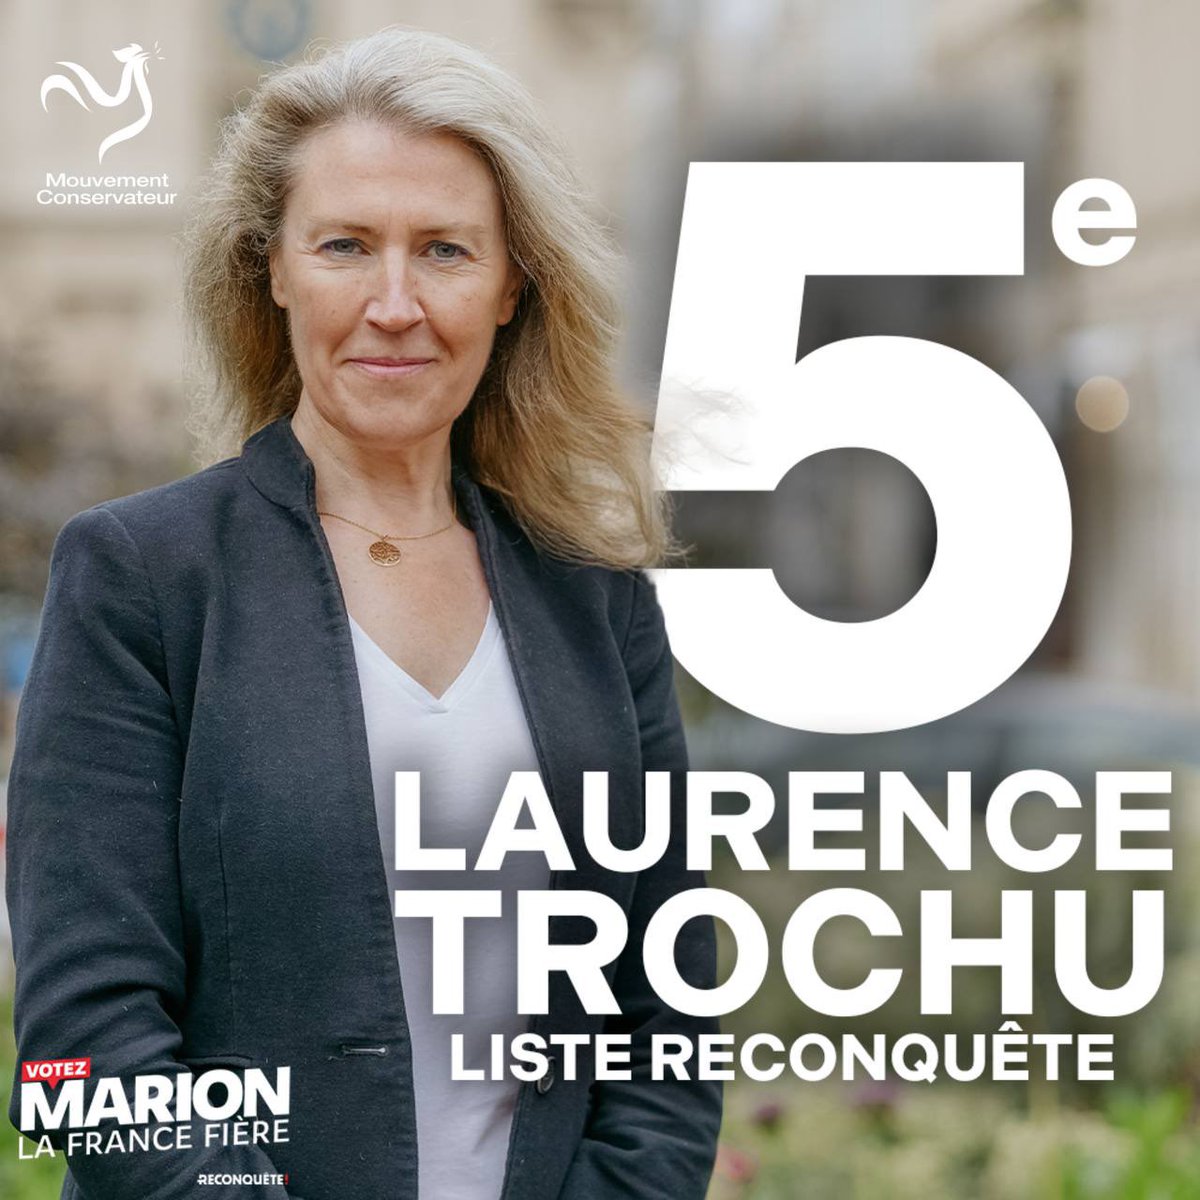 Je suis candidate en 5e position sur la liste de @Reconquete_off menée par @MarionMarechal Mon entretien pour @leJDD à lire ici lejdd.fr/politique/laur… @MvtConservateur #AvecMarion #VotezMarion